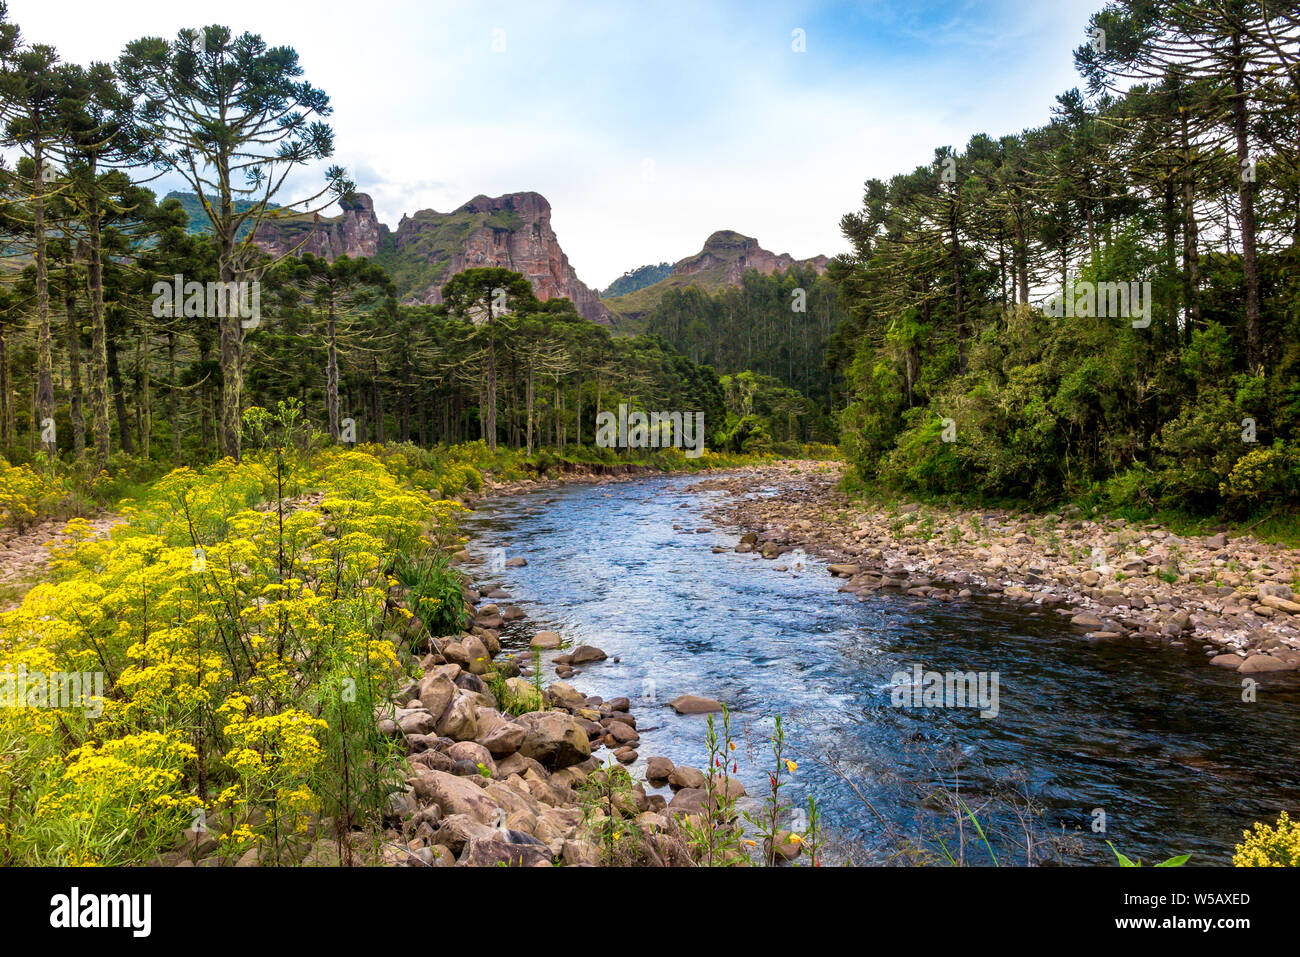 Canoas fiume, con rocce, fiori gialli, foresta sulle rive e Pedra da Aguia mountain in background, cielo molto nuvoloso Foto Stock